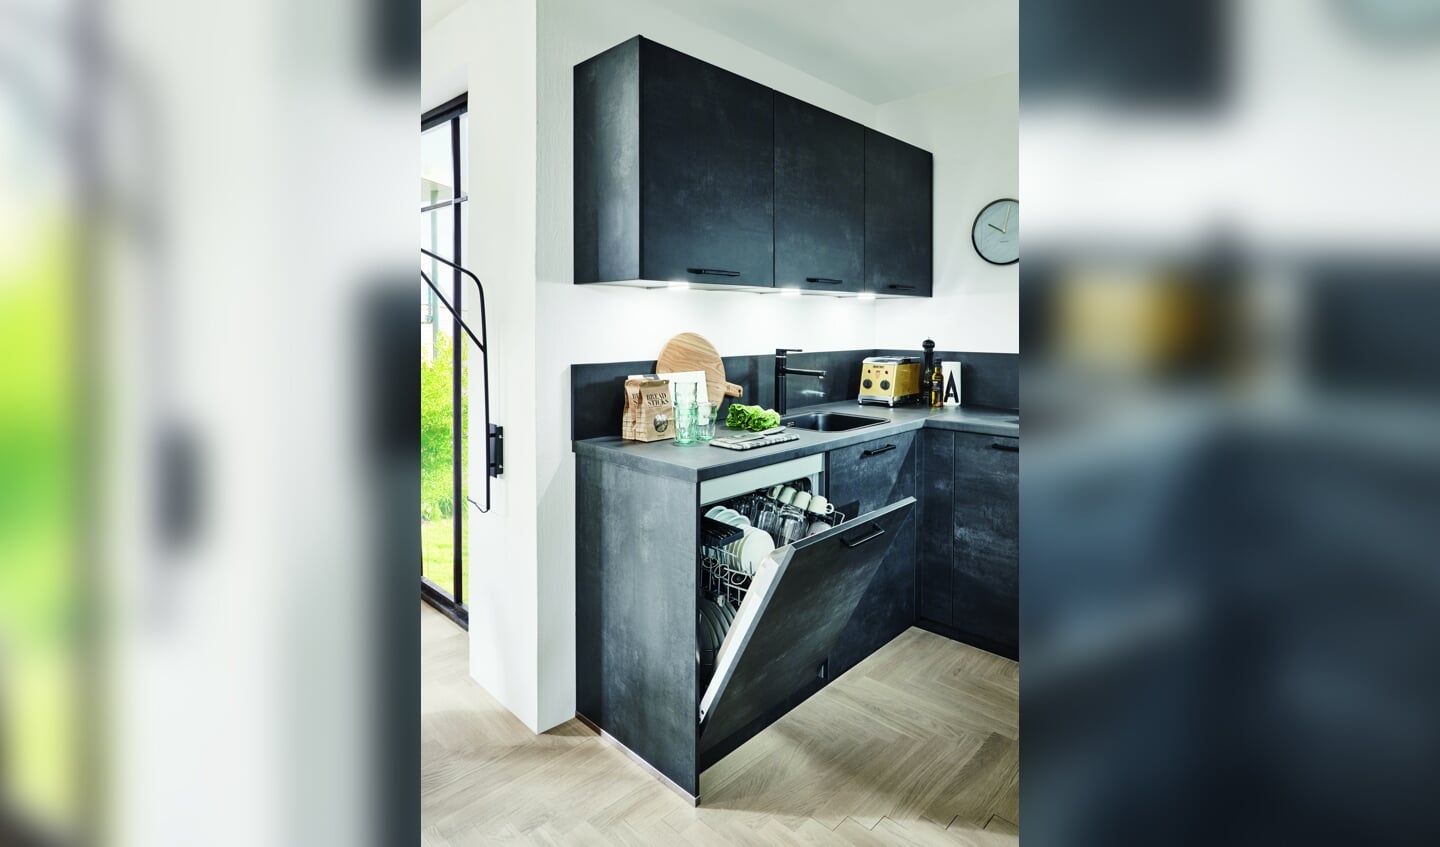 Met de Apparatenset Comfort is de keuken van alle apparatuur voorzien.